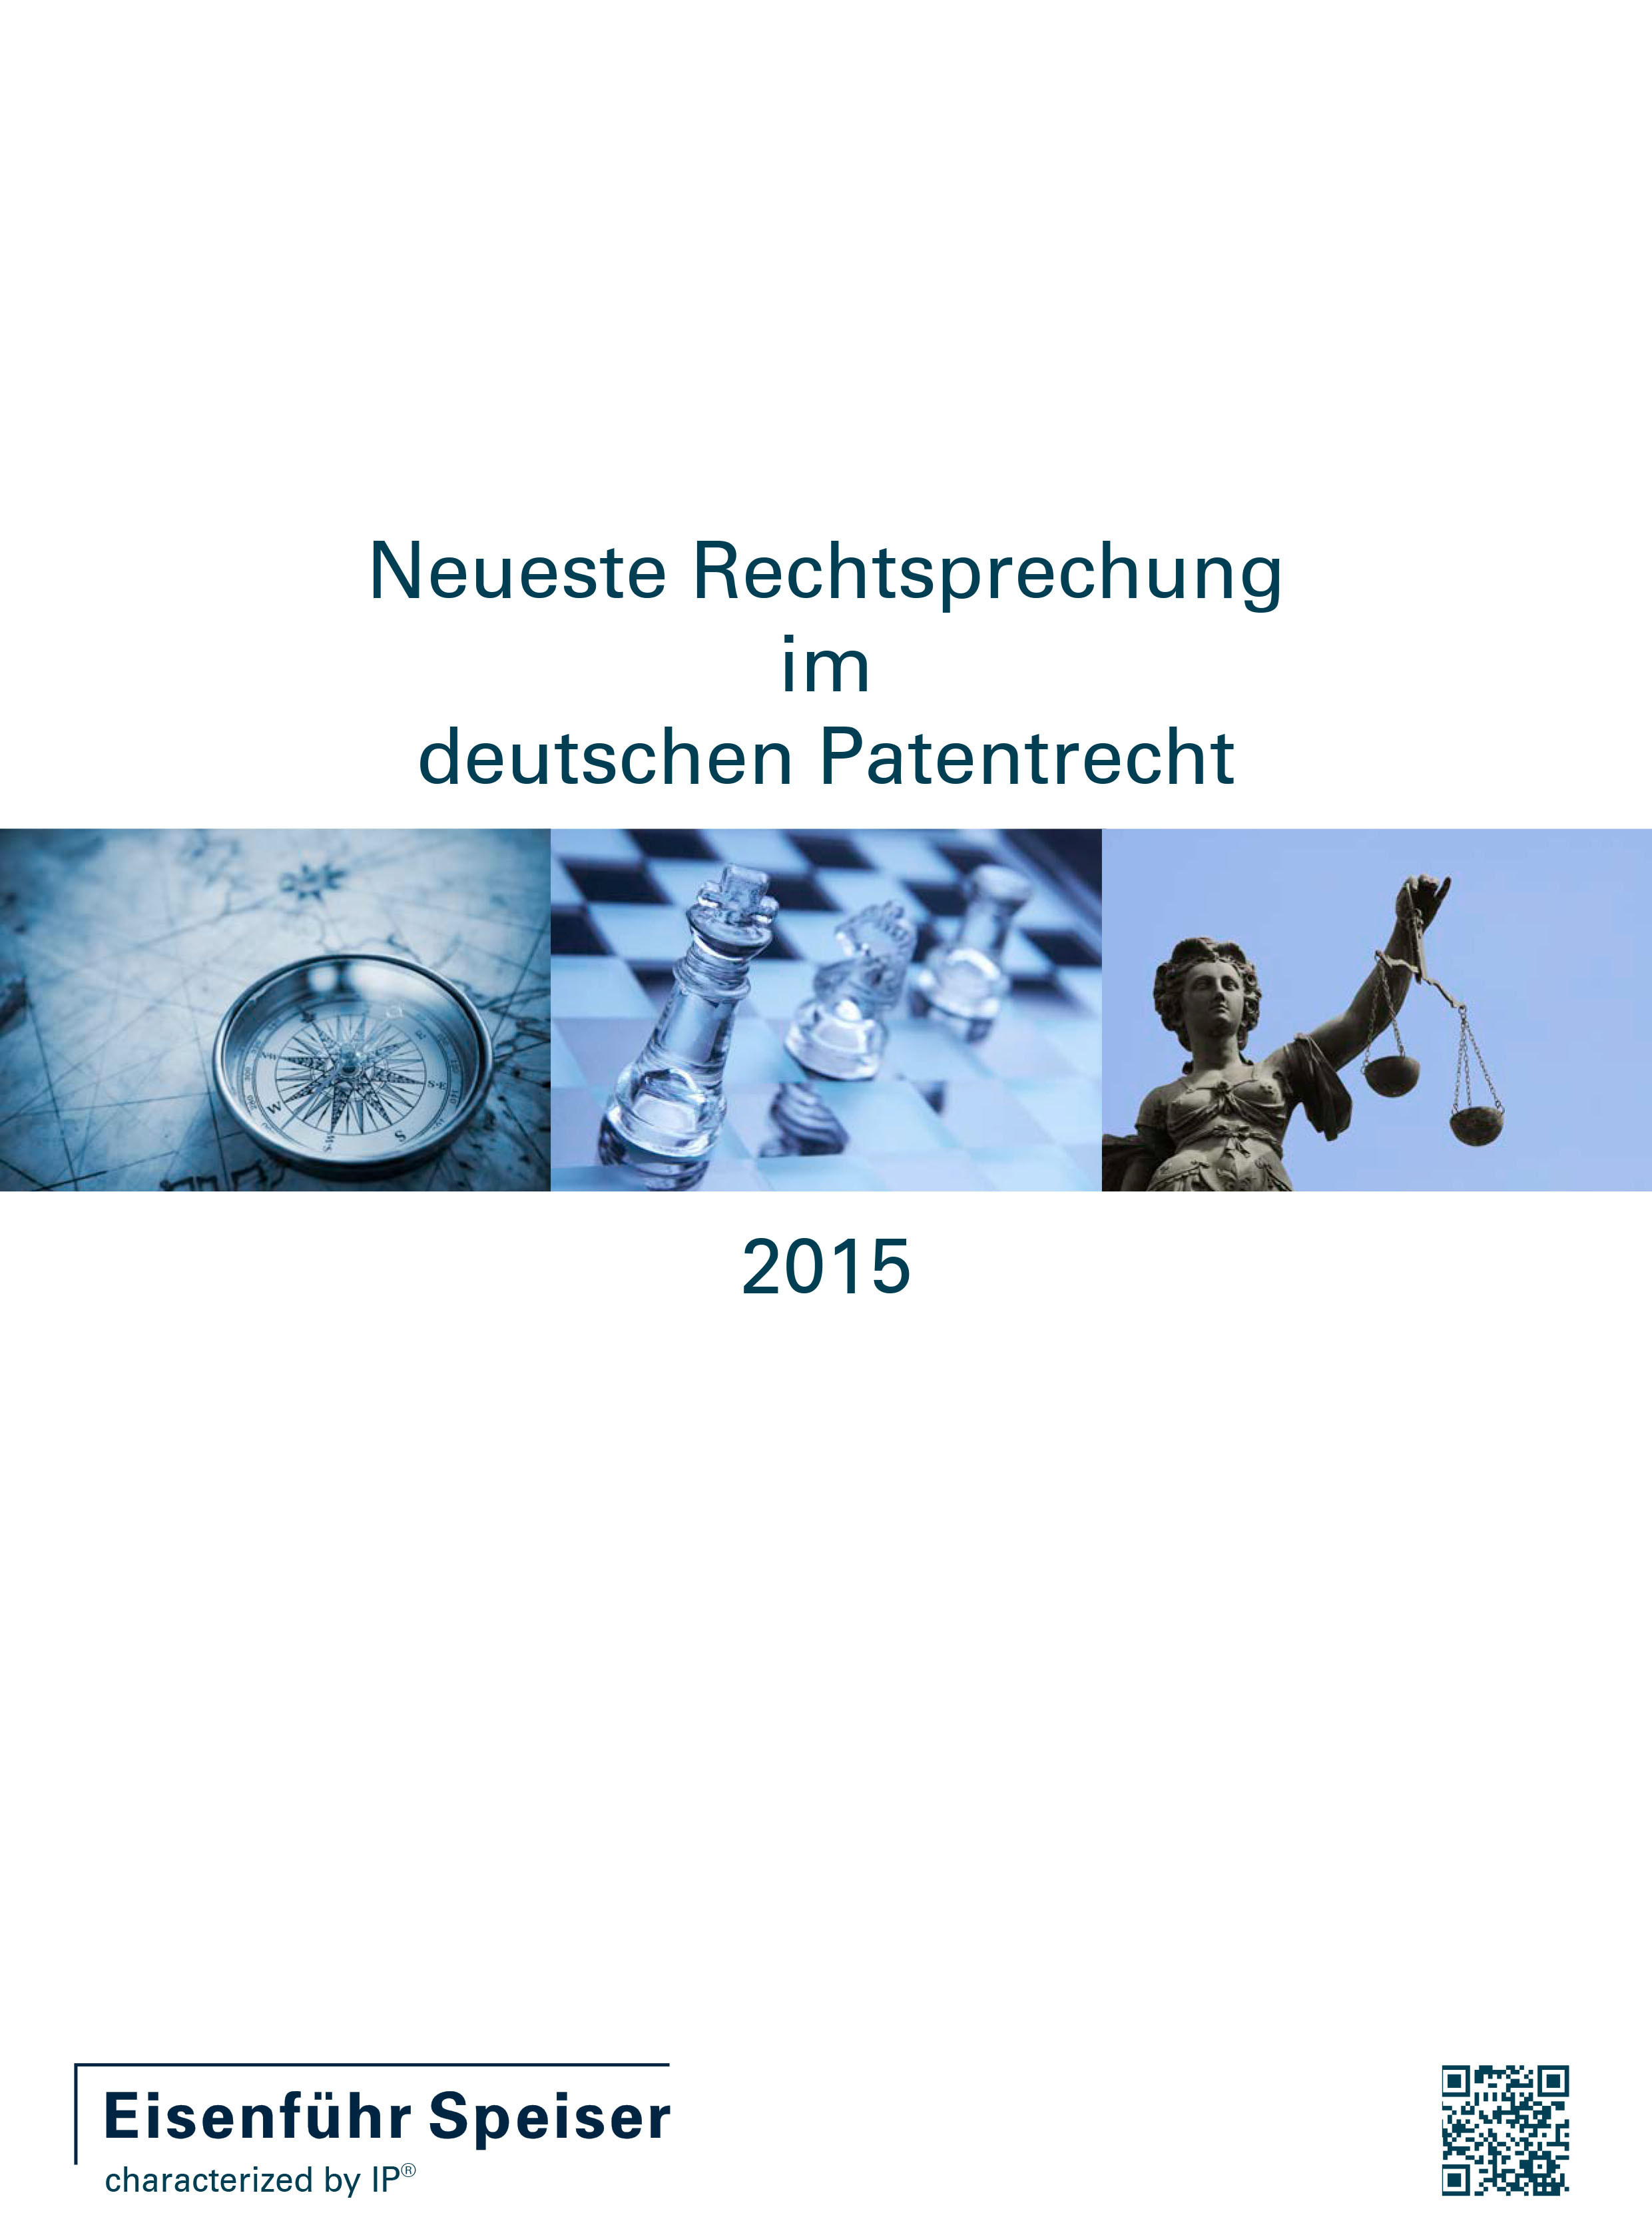 Neueste Rechtsprechung im deutschen Patentrecht 2015